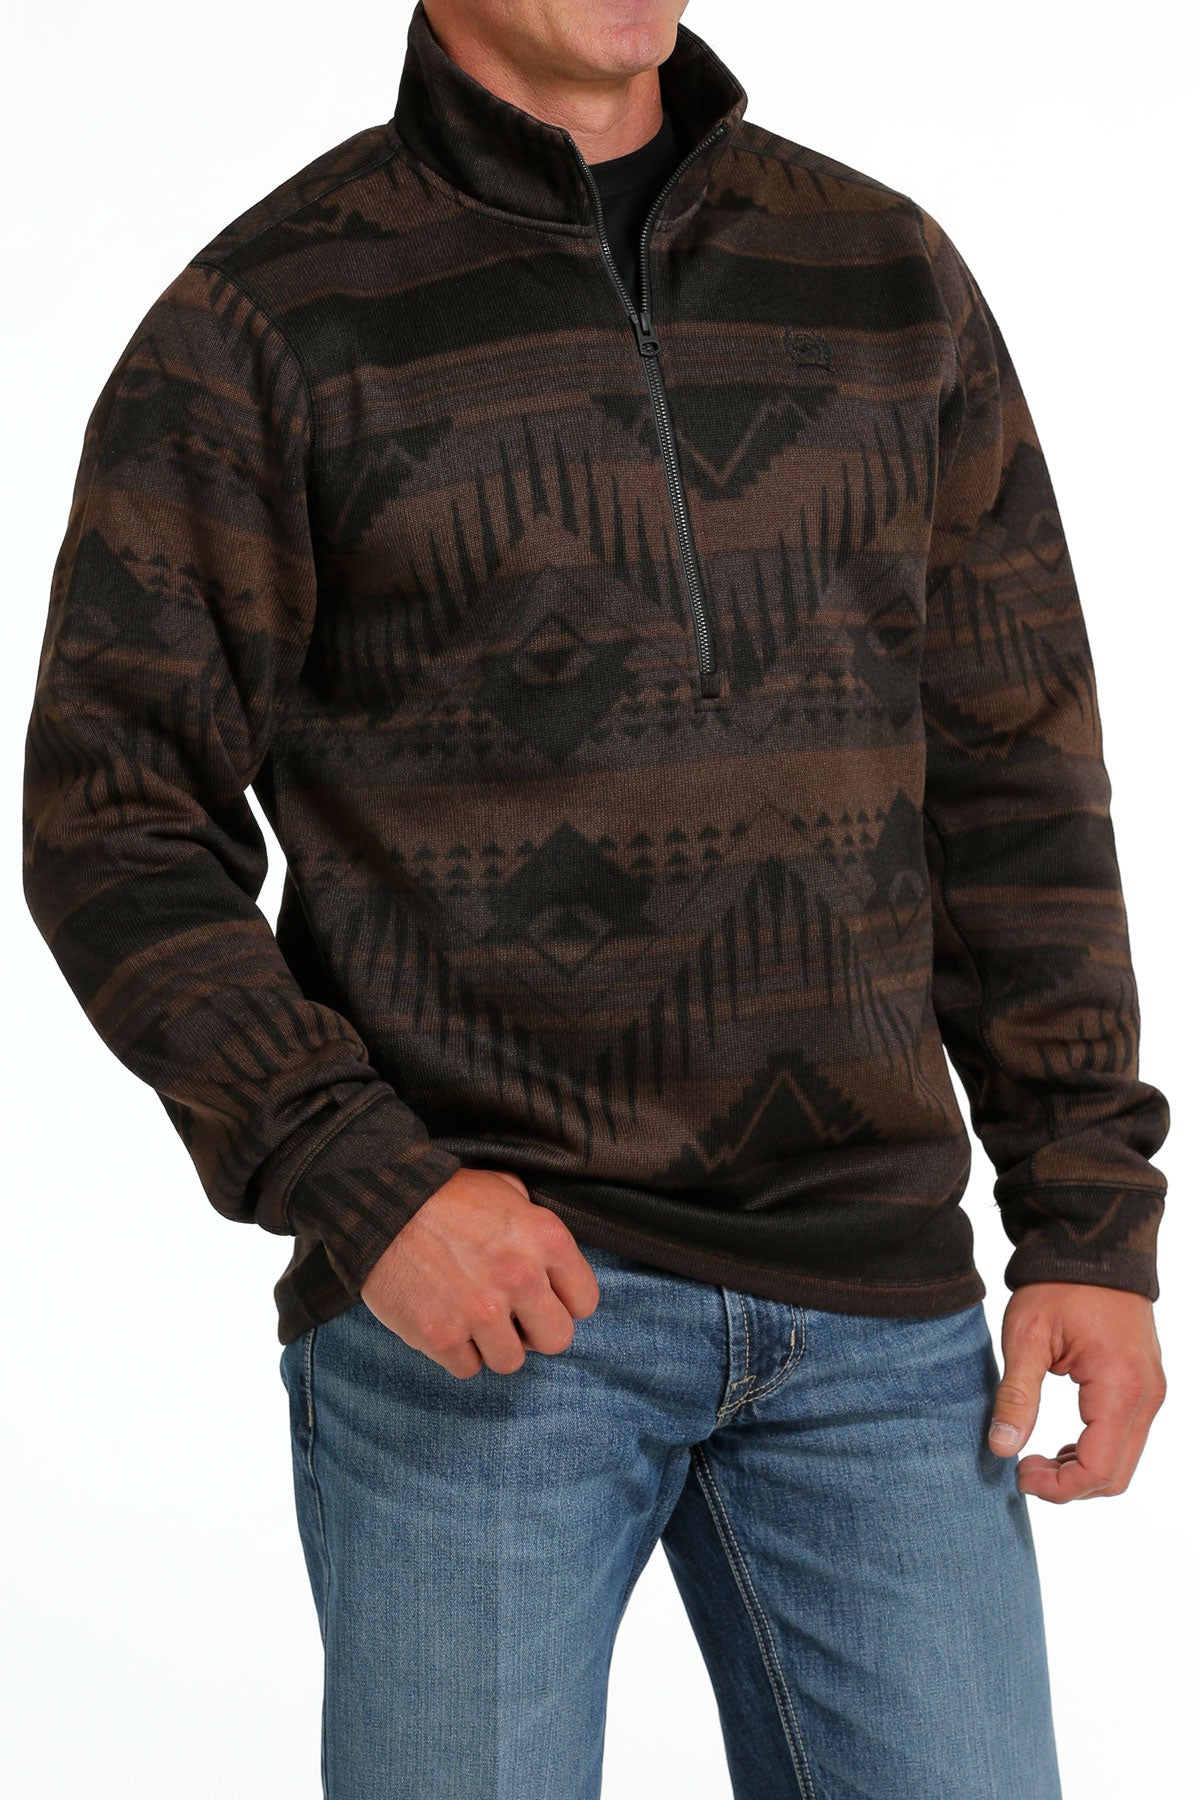 CINCH Men's Half Zip Sweater